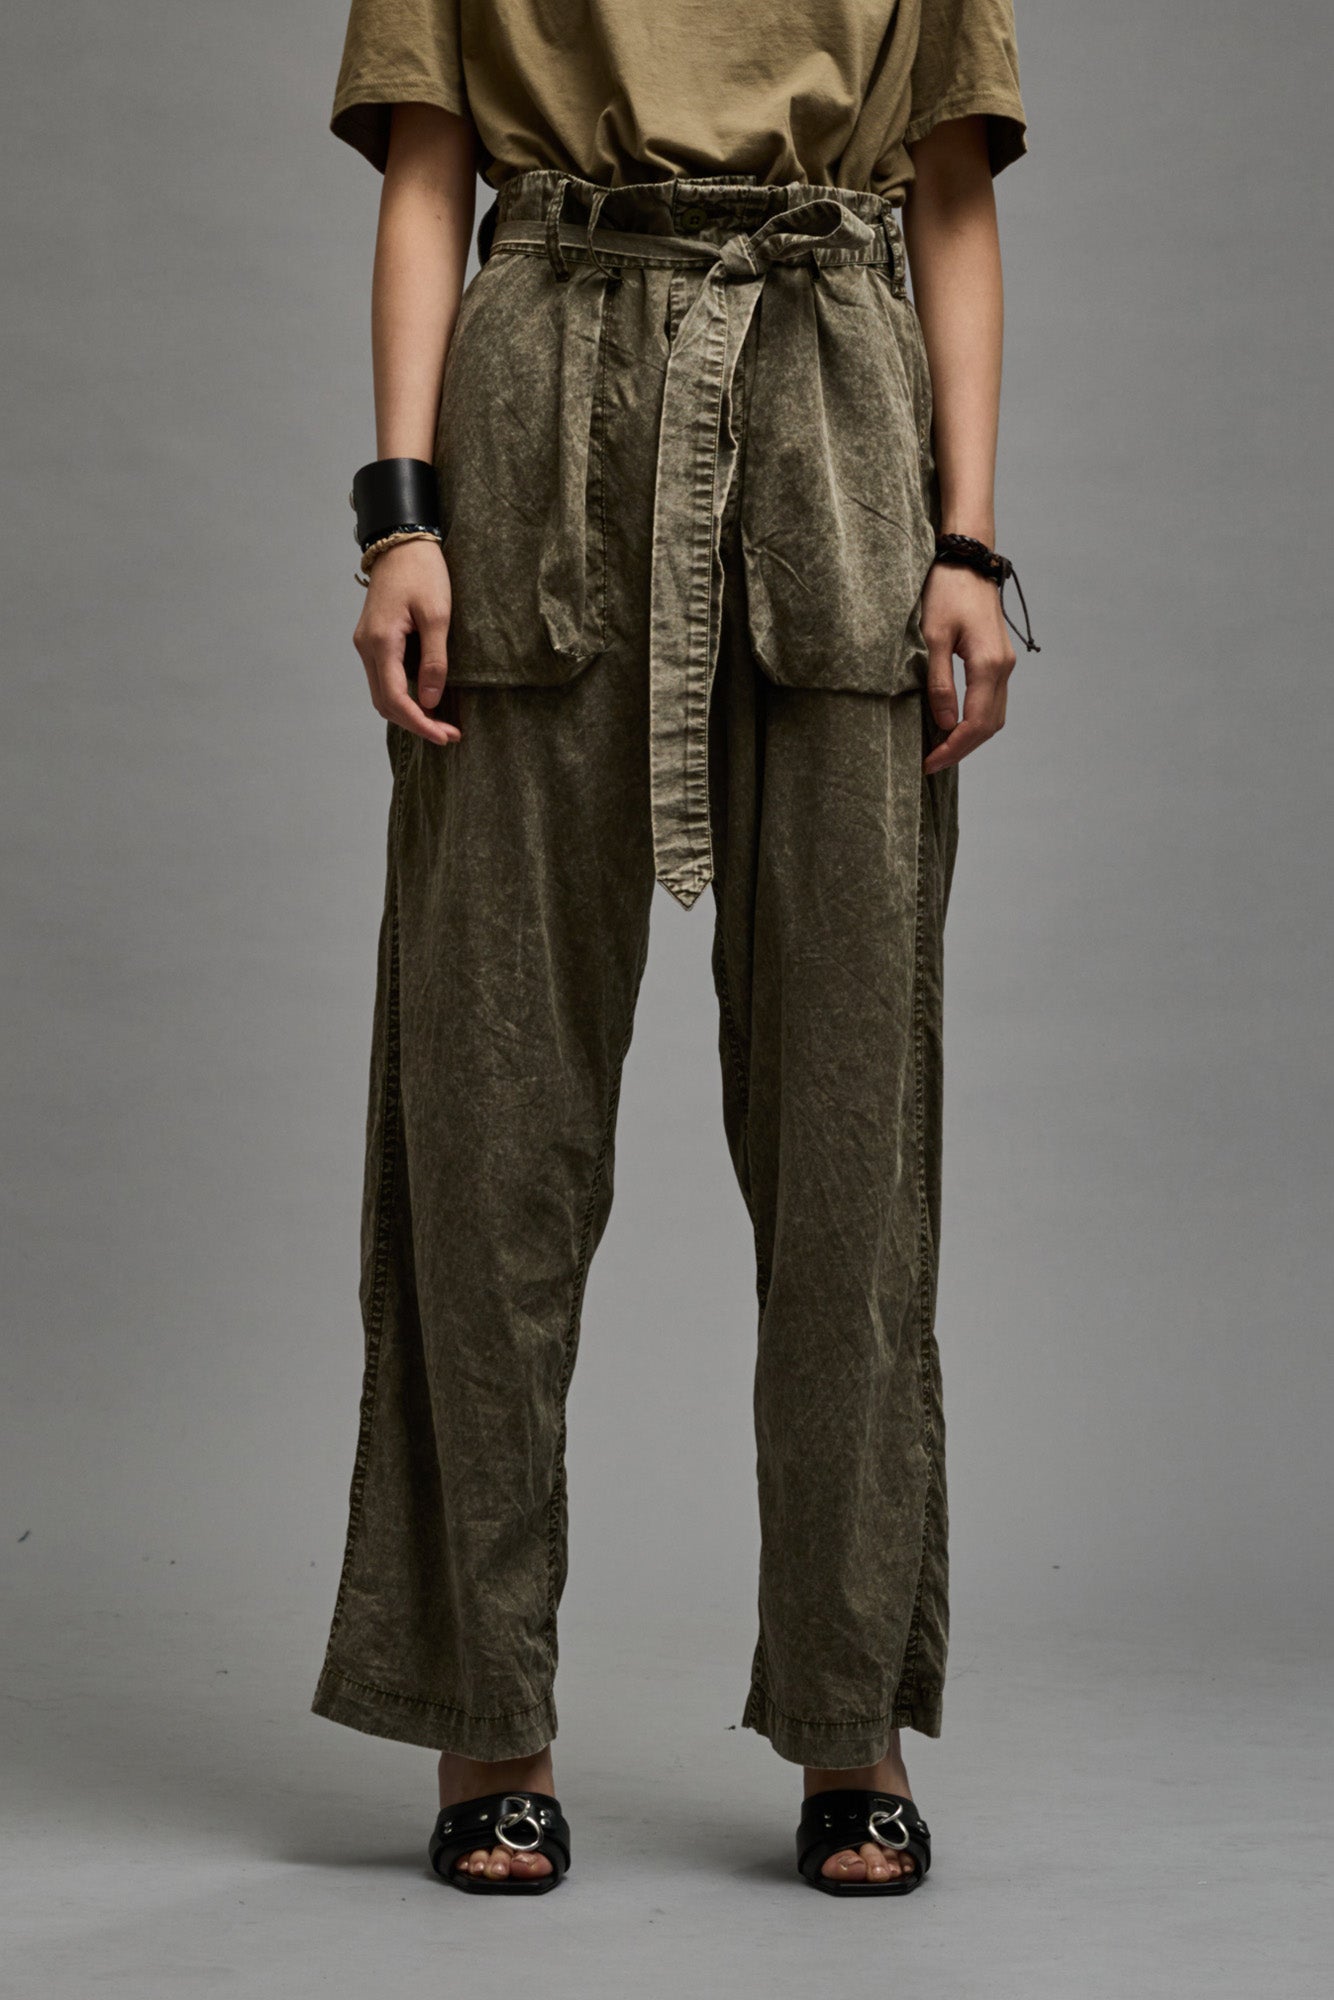 Women's Pants & Shorts | R13 Denim Official Site